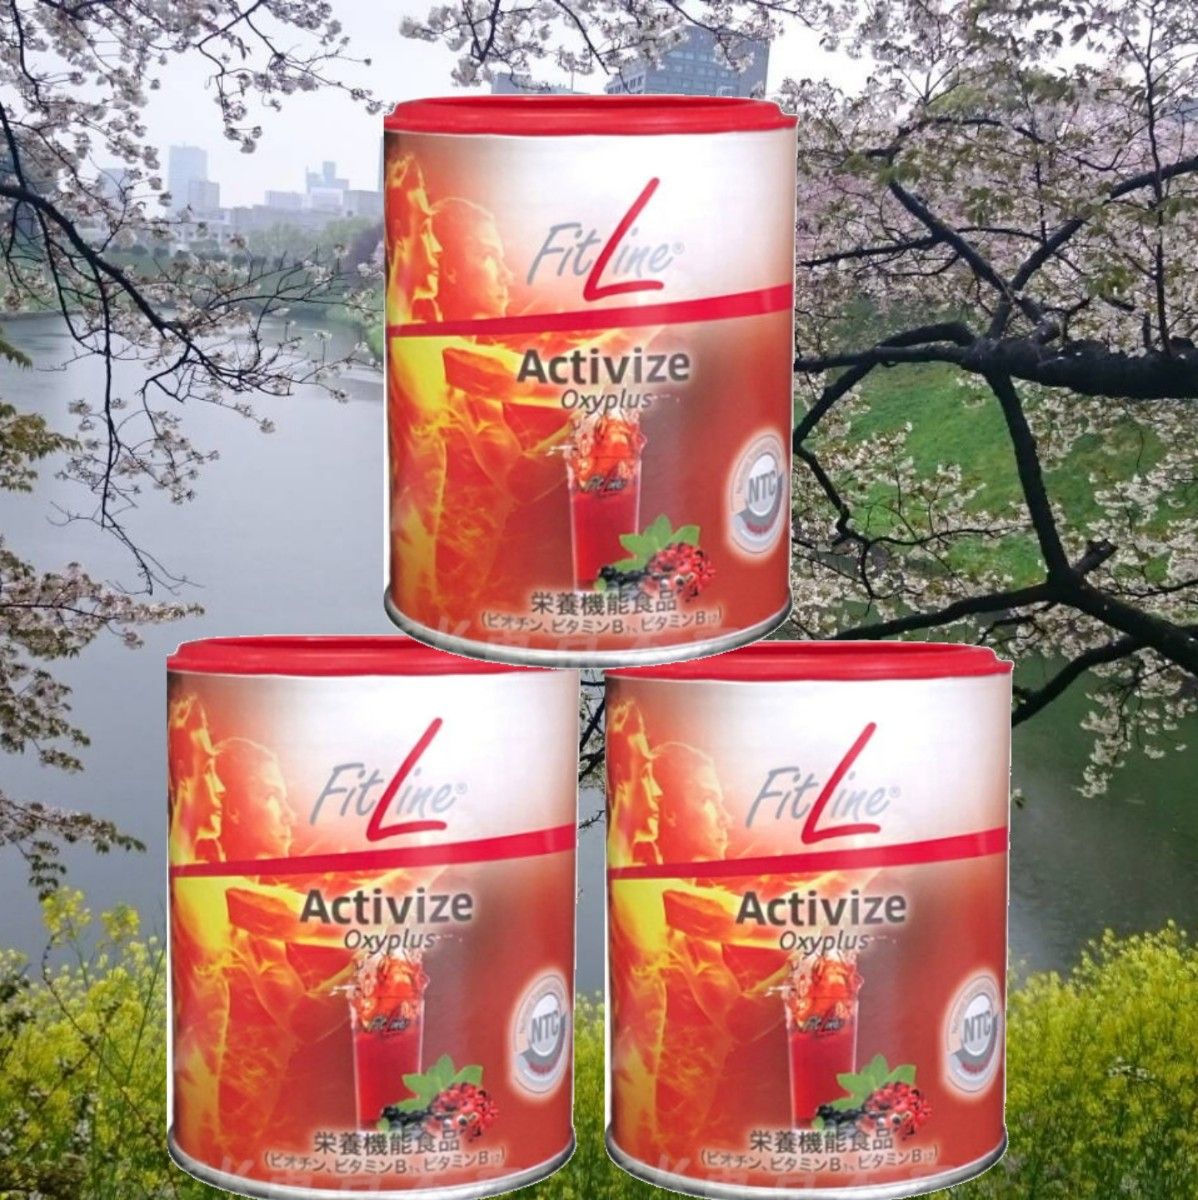 本日特価】 ドイツPM アクティヴァイズ5缶セット 25%増量 FITLINE